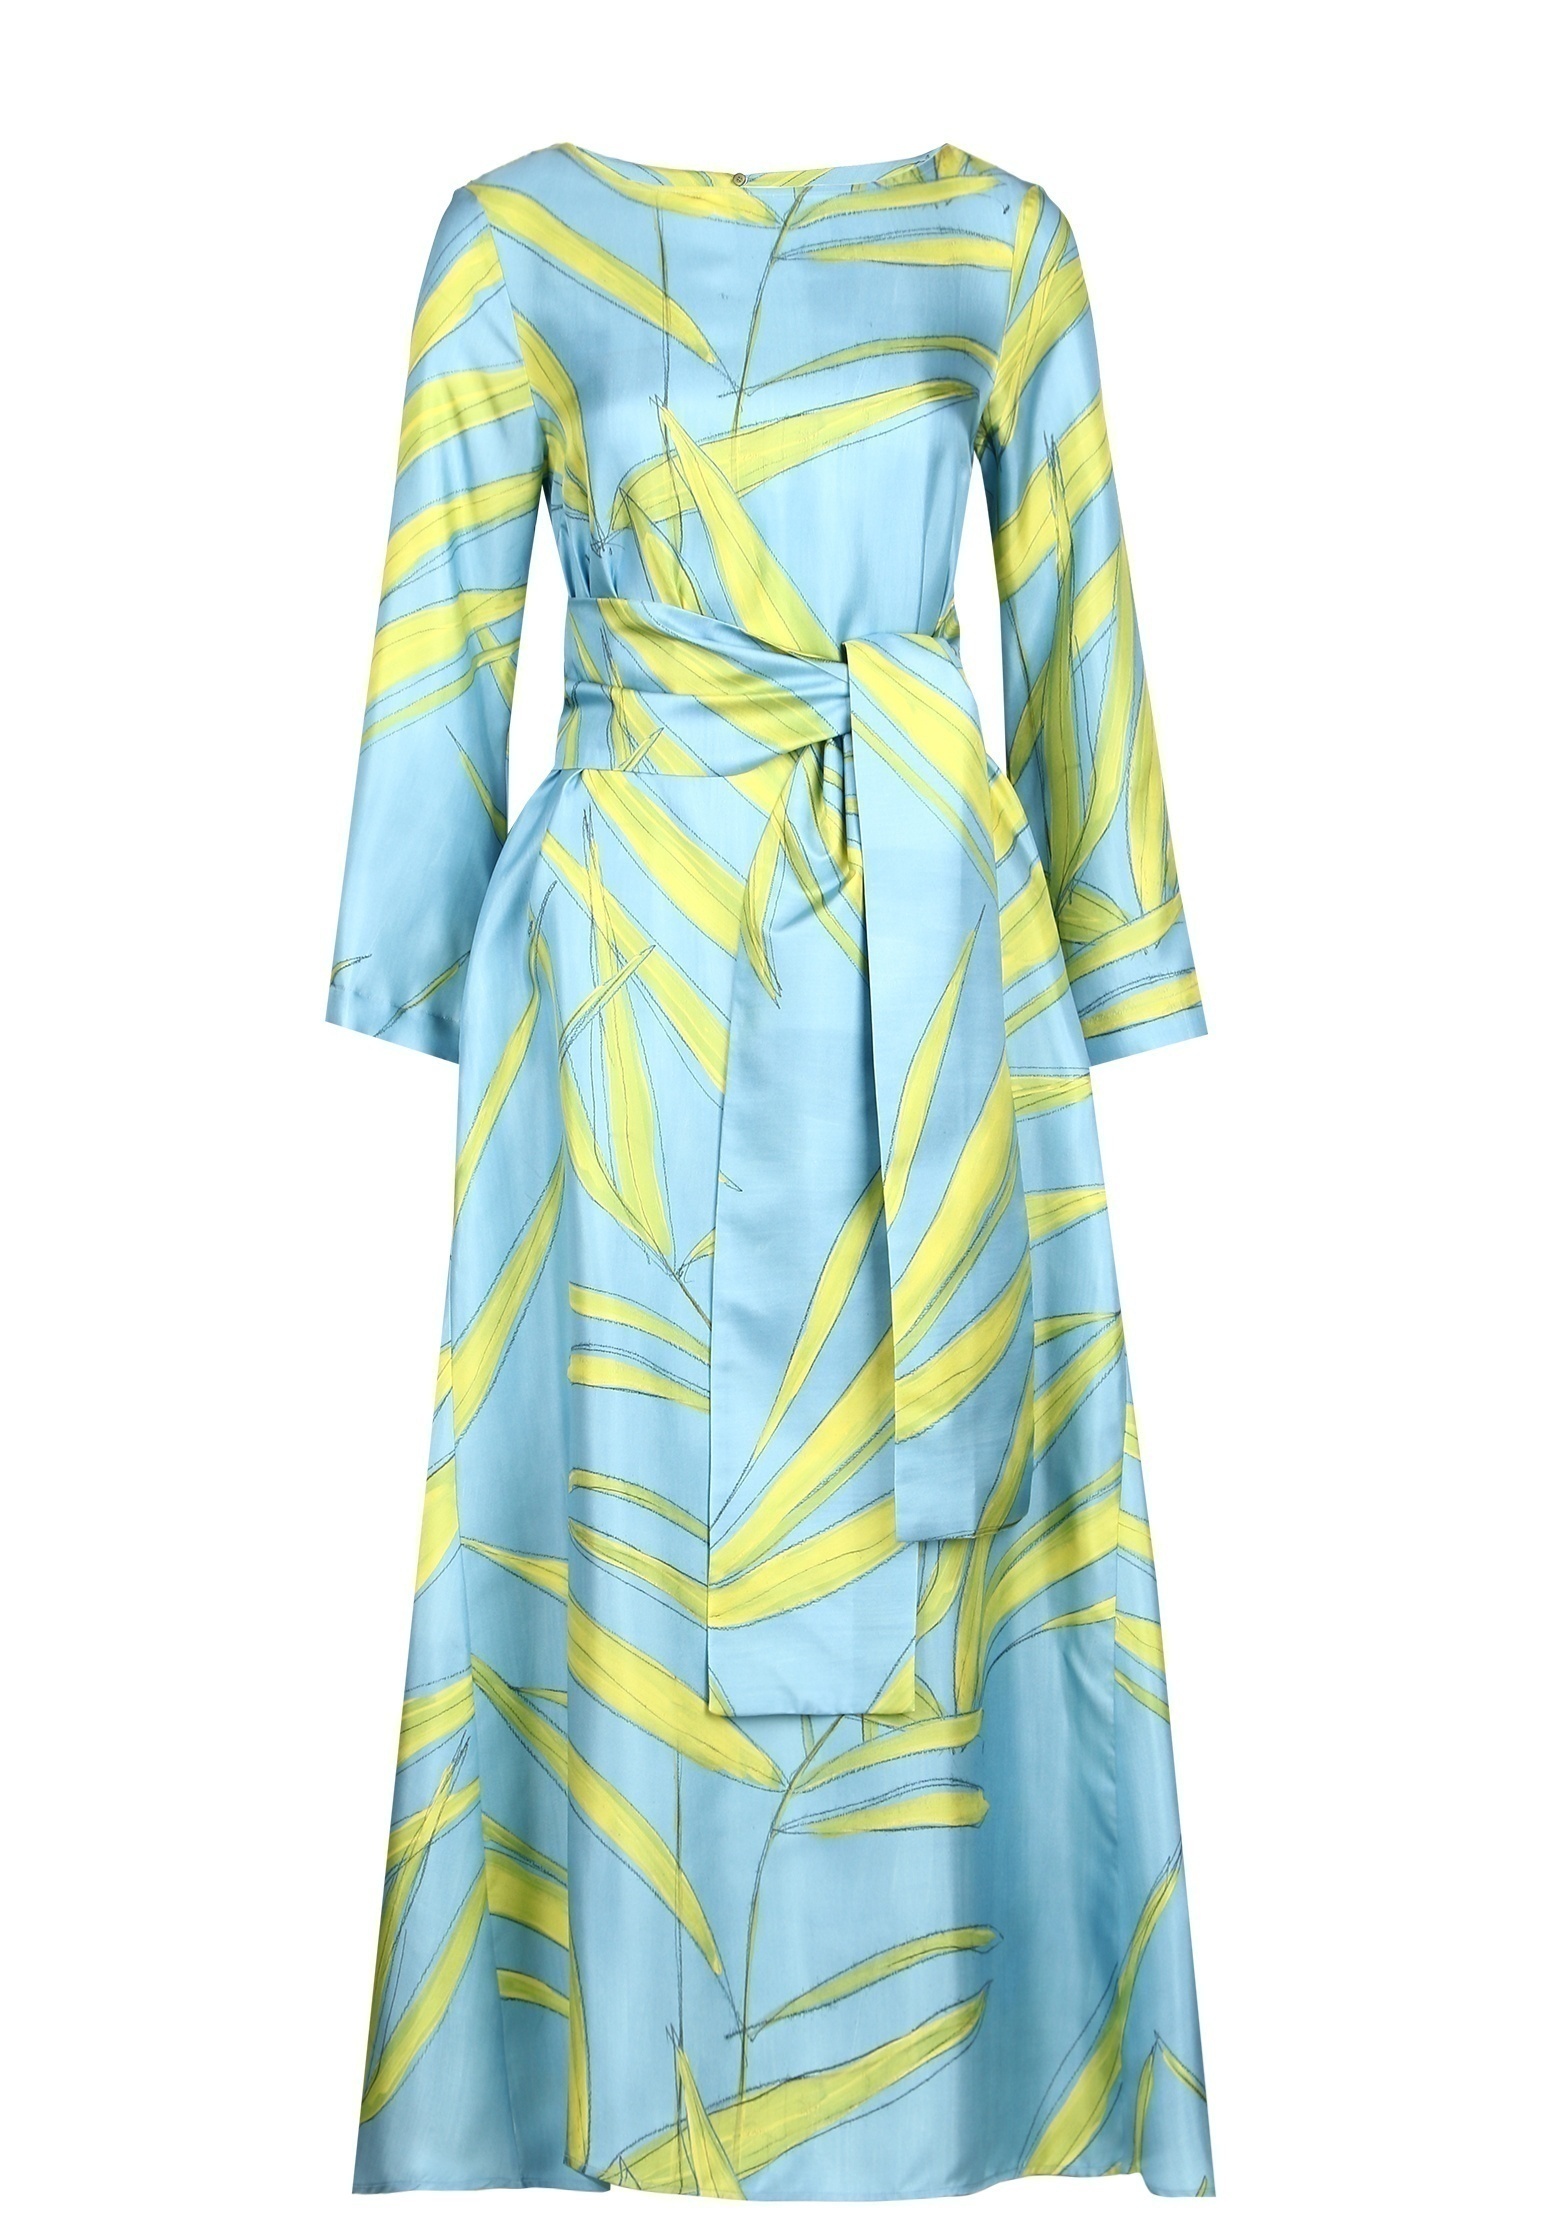 Платье женское Maison Co.go 142904 голубое 44 IT